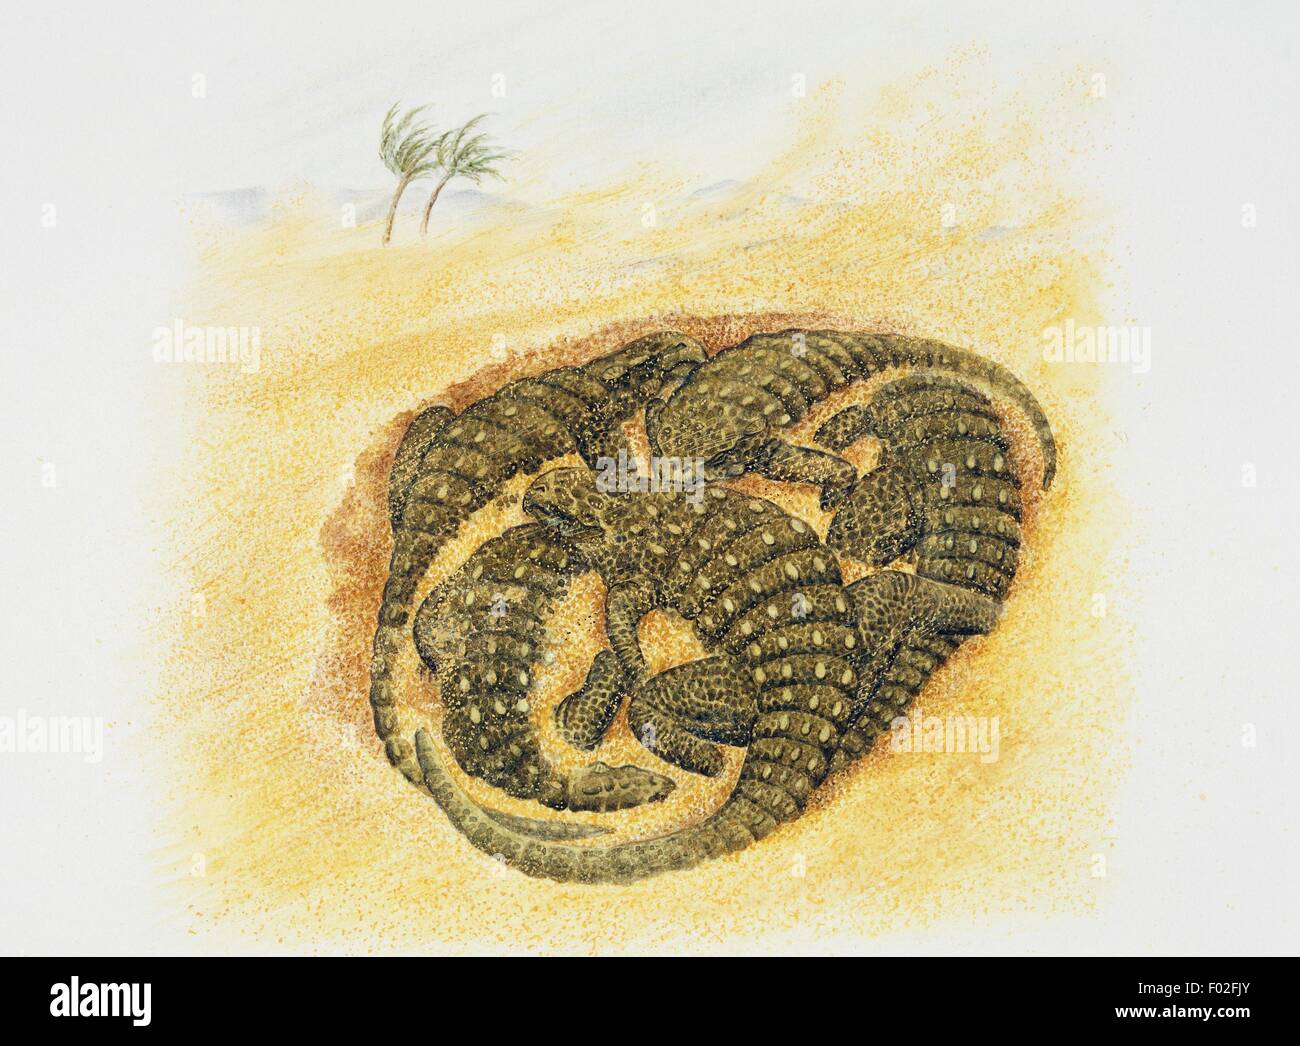 Überreste von fünf Baby Pinacosaurus, Ankylosauridae, von Sand bedeckt. Artwork von Wayne Ford. Stockfoto